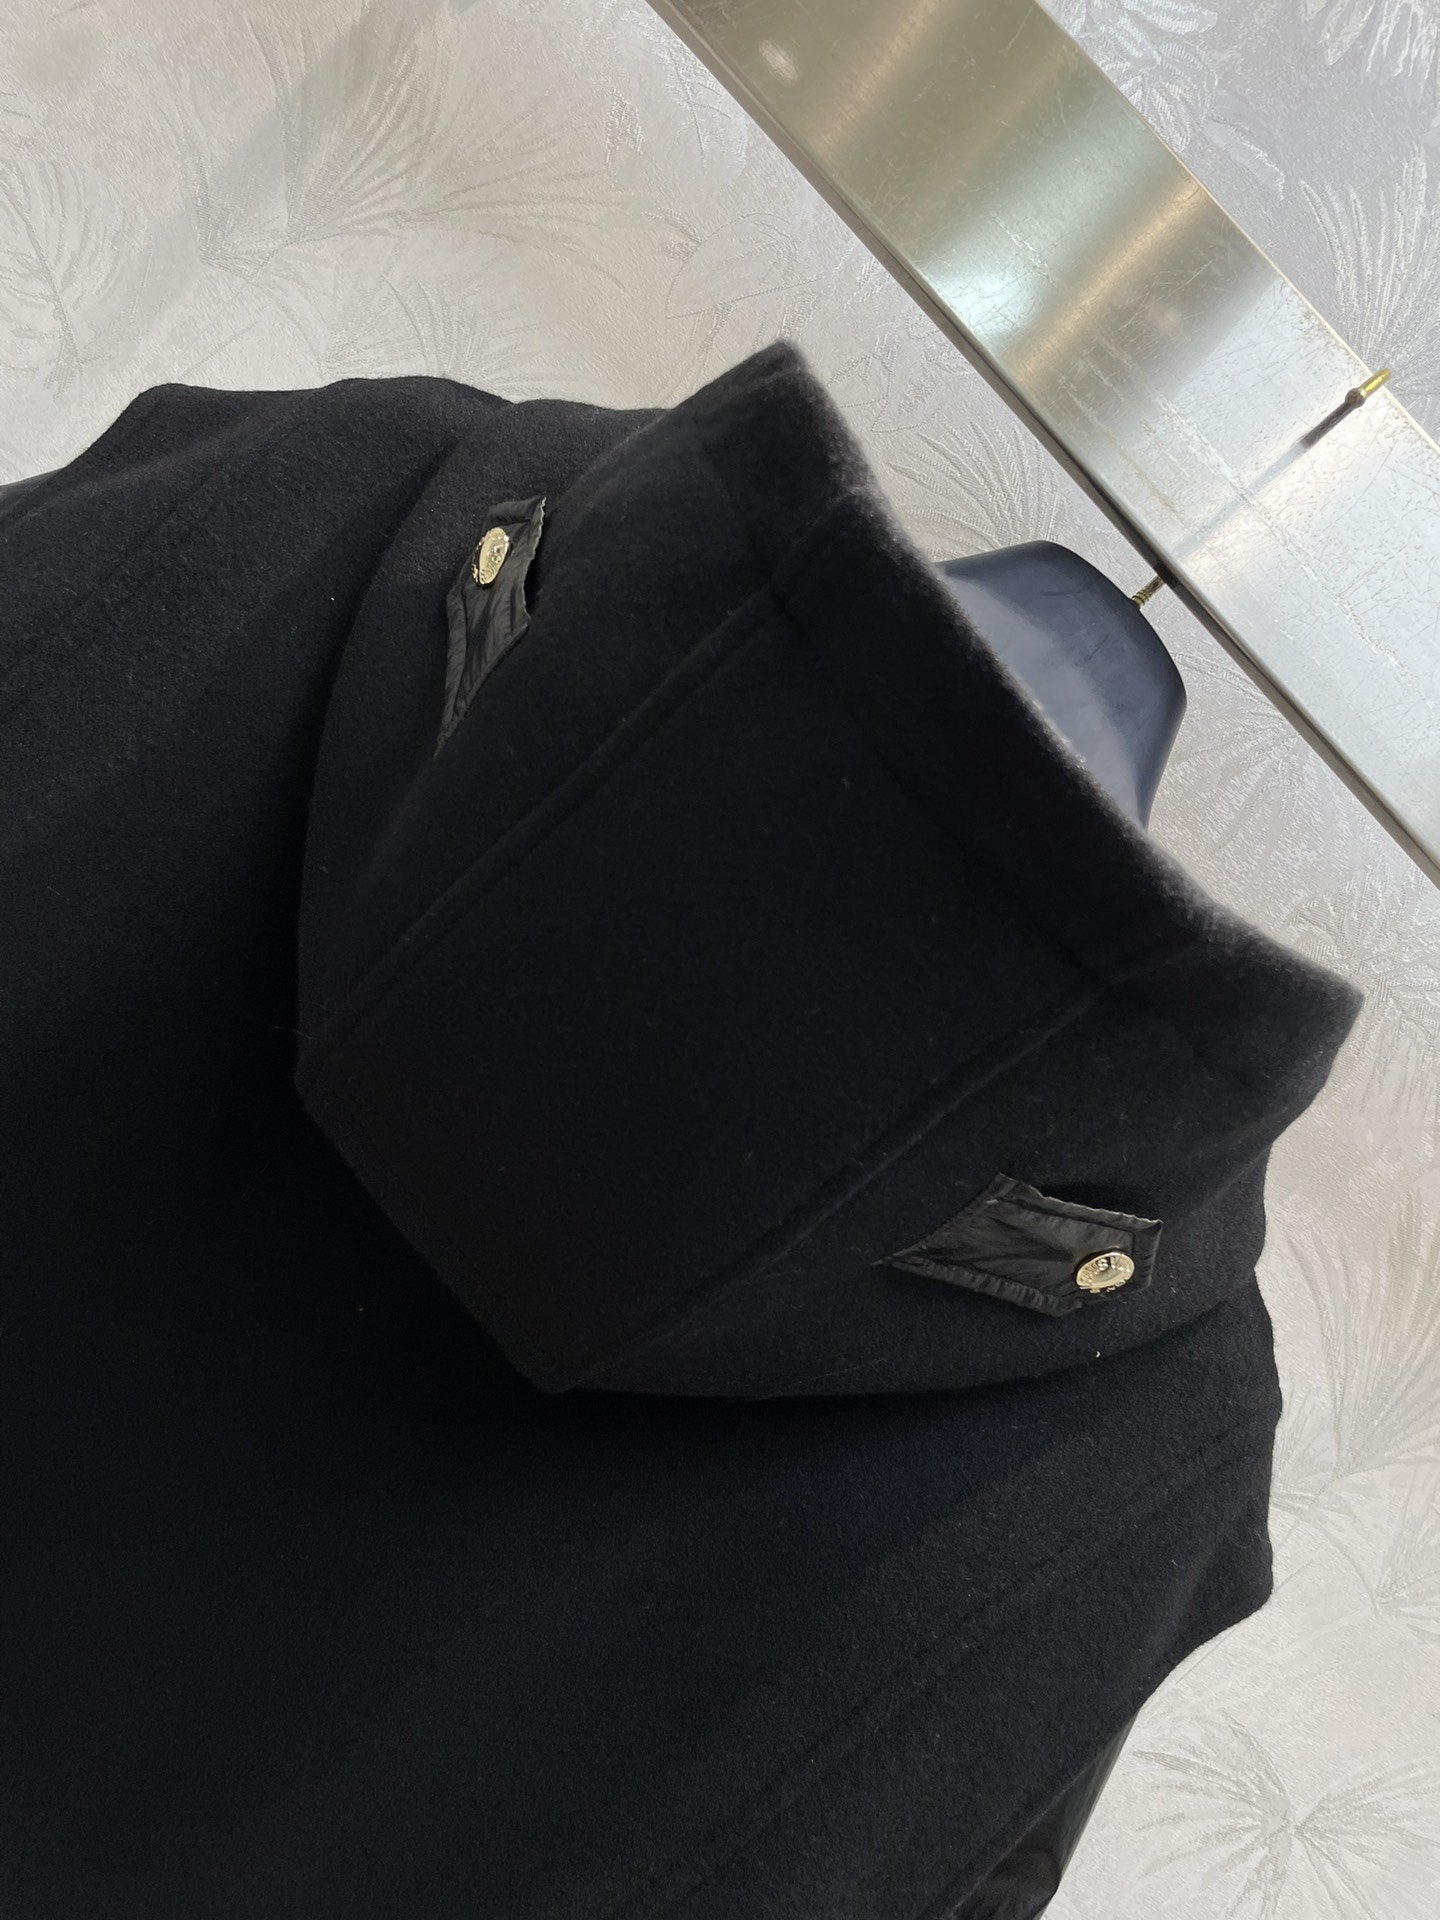 L家23秋冬新款连帽立领拼接将两件夹克外套面料质感绝绝子配有当季标志性胶牌Logo点缀袖口两侧的摁扣装饰